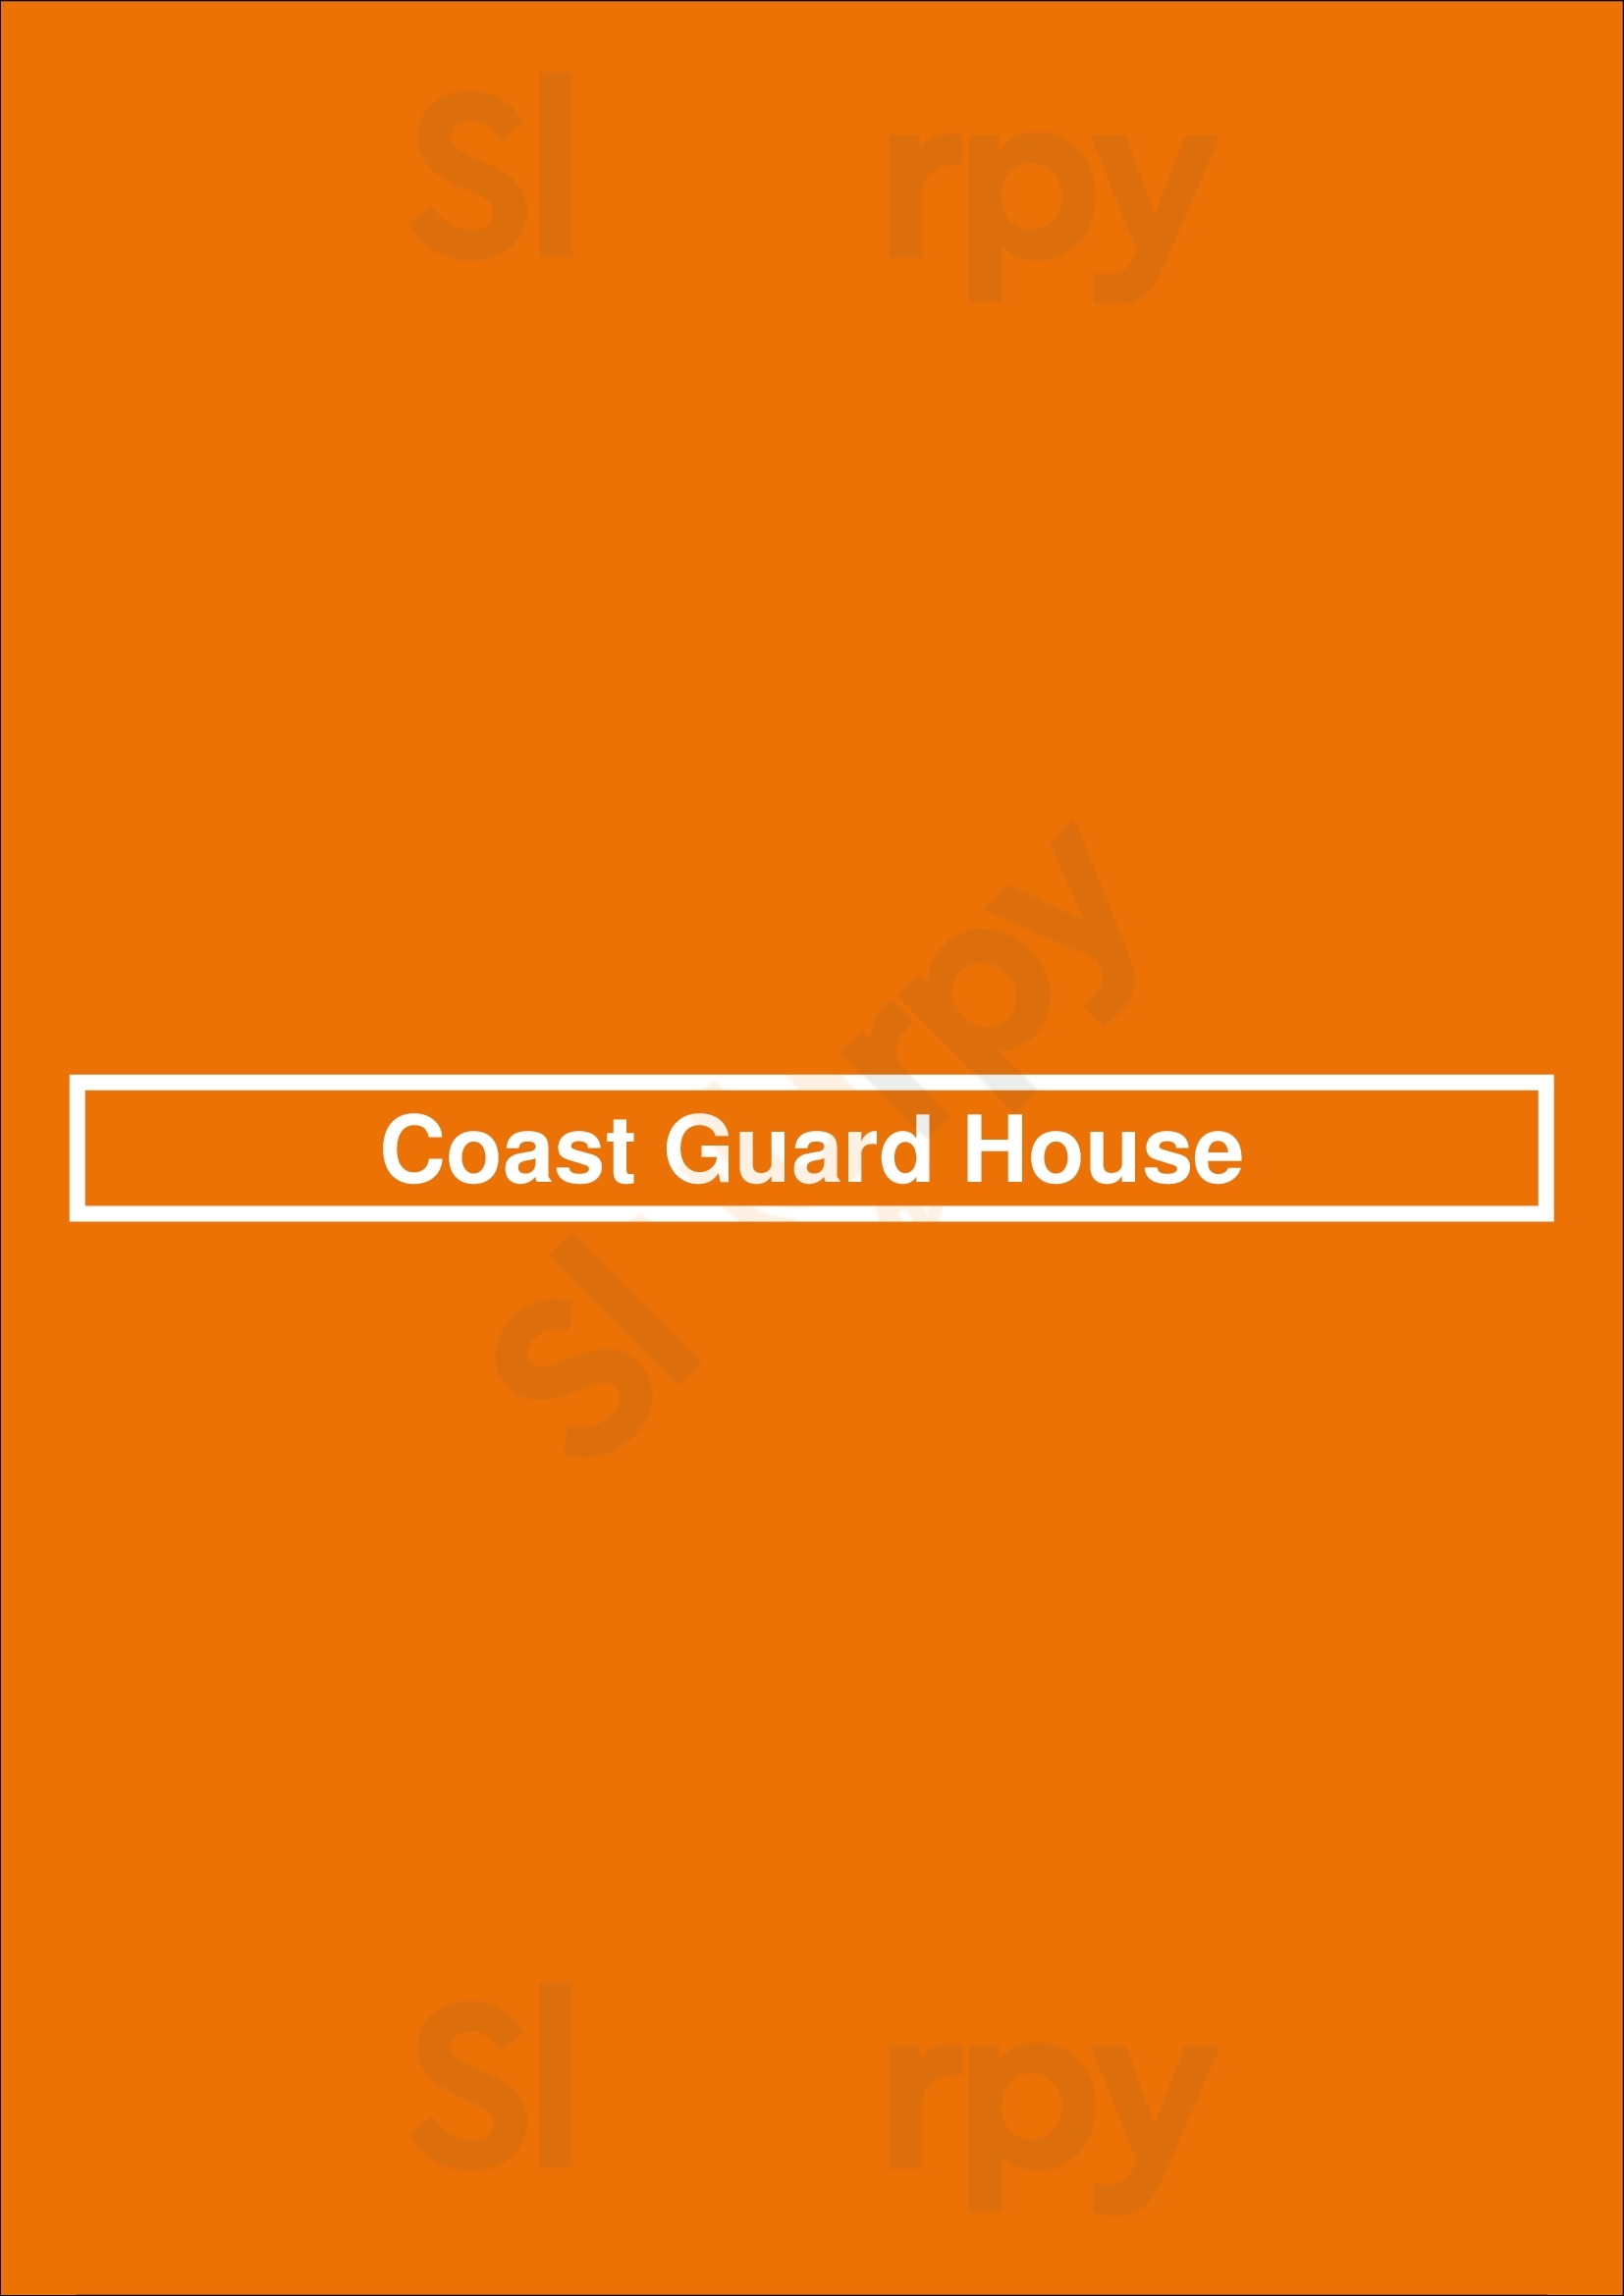 Coast Guard House Narragansett Menu - 1